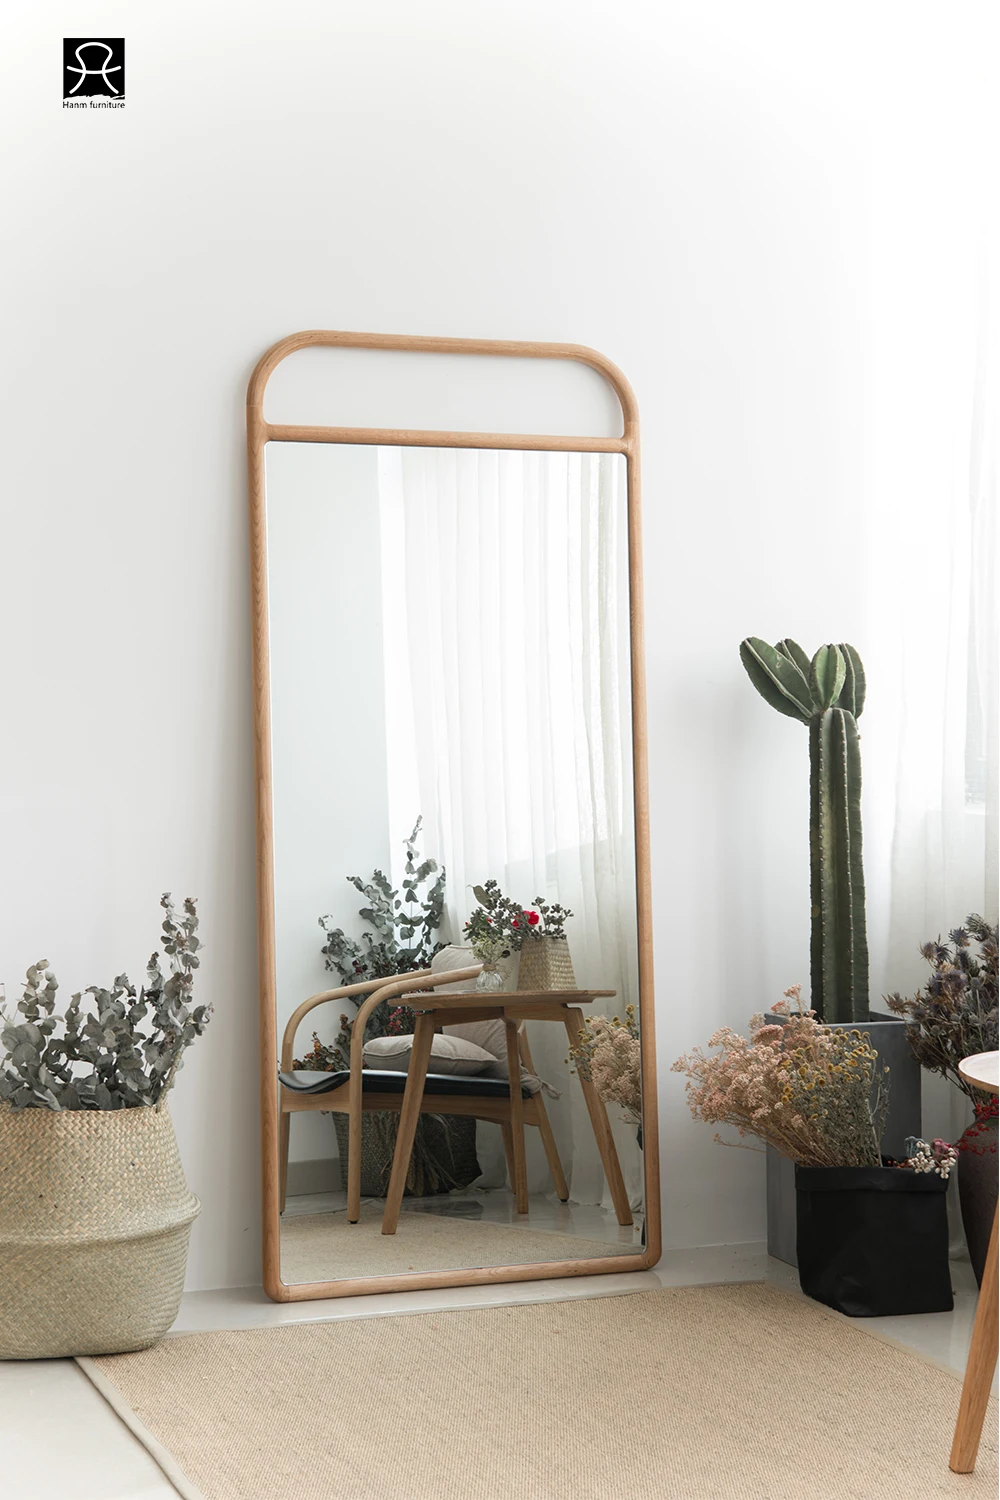 Modern Style Bedroom Dressing Full Length Wooden Framed Floor Standing Mirror Buy Standing Mirror Framed Mirror Wooden Mirror Product On Alibaba Com